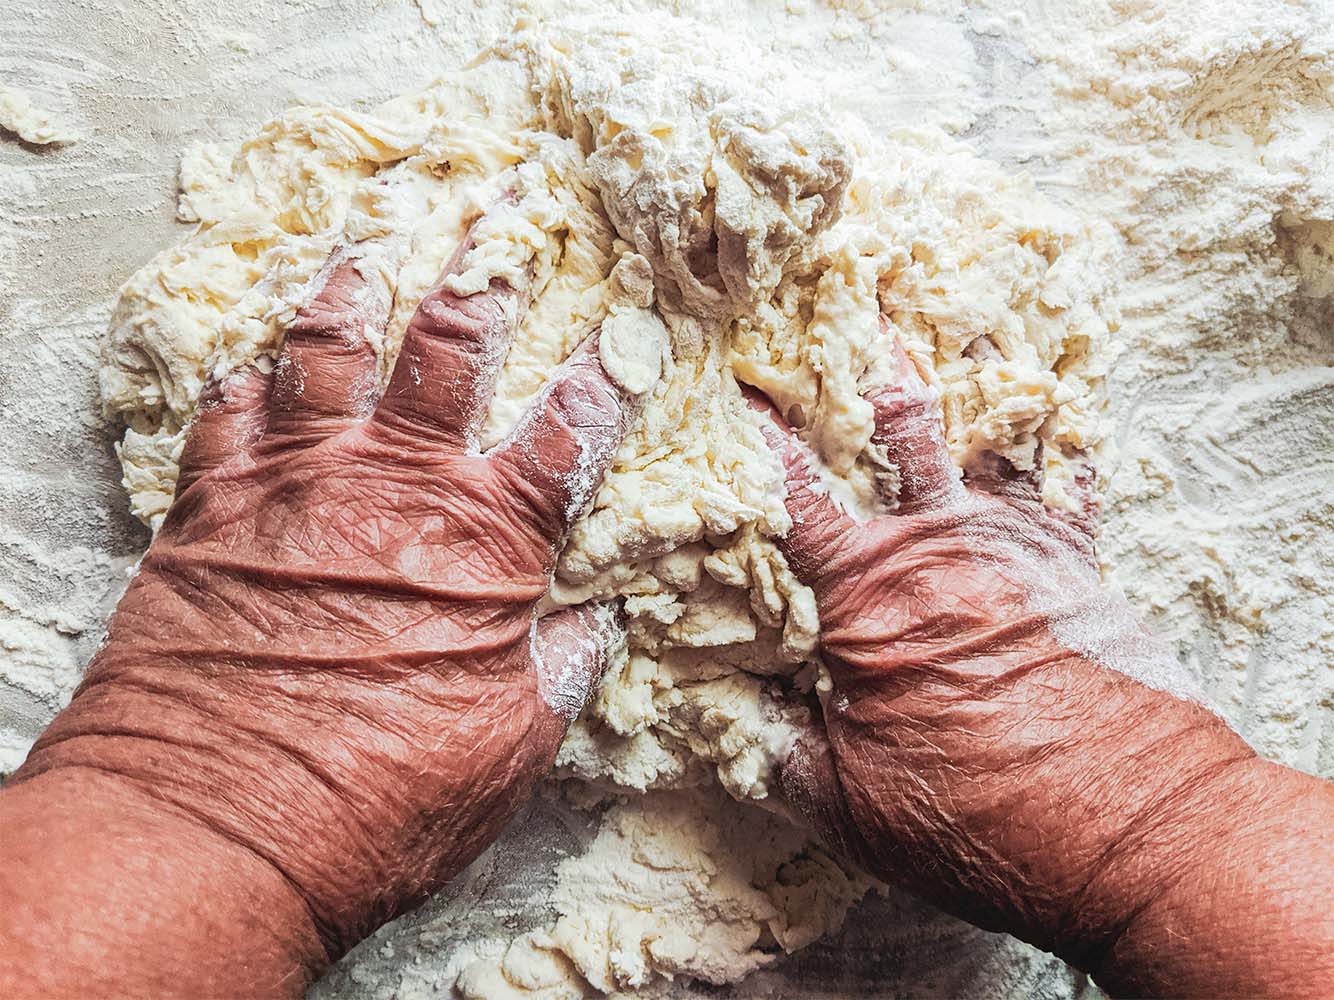 resident kneading dough for baking